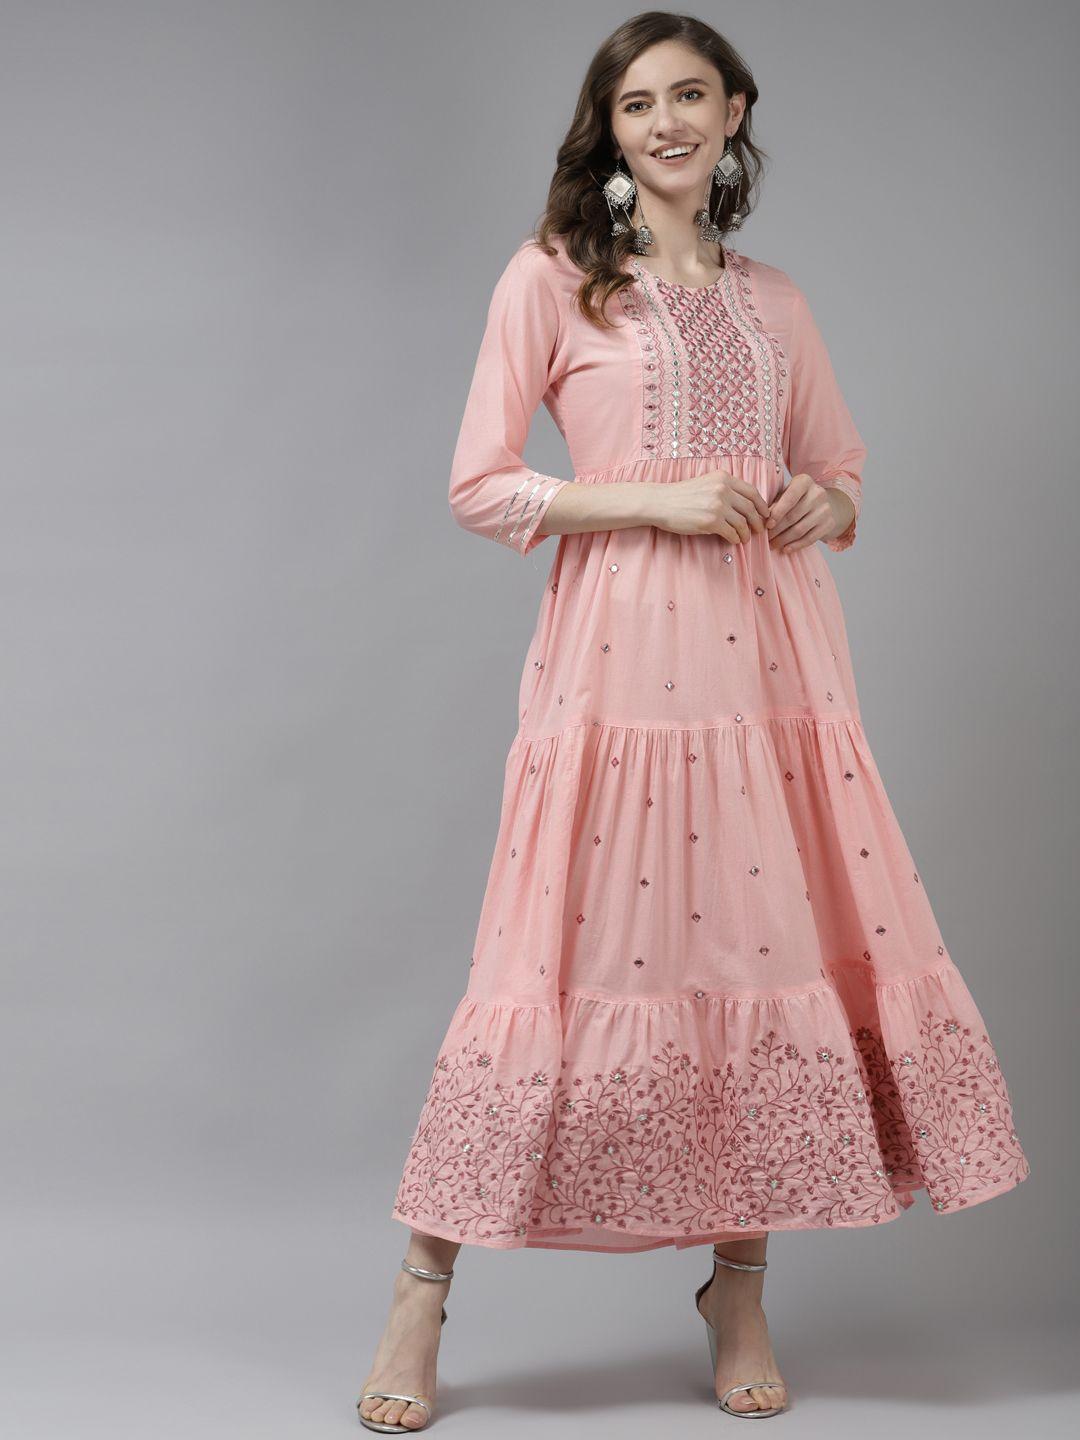 yufta pink embellished embroidered ethnic maxi dress